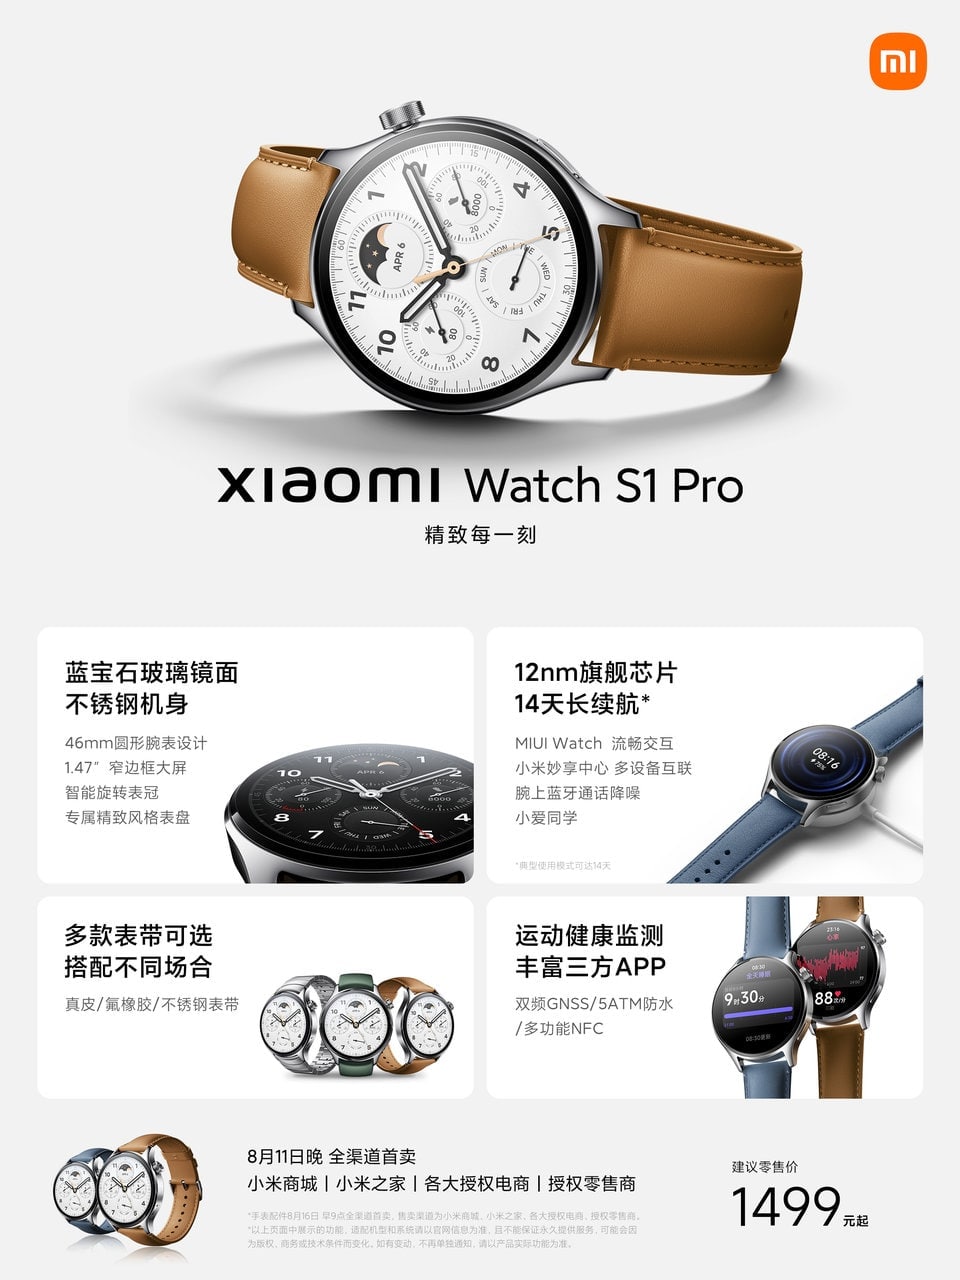 ساعت هوشمند شیائومی واچ S1 پرو با 100 حالت ورزشی معرفی شد